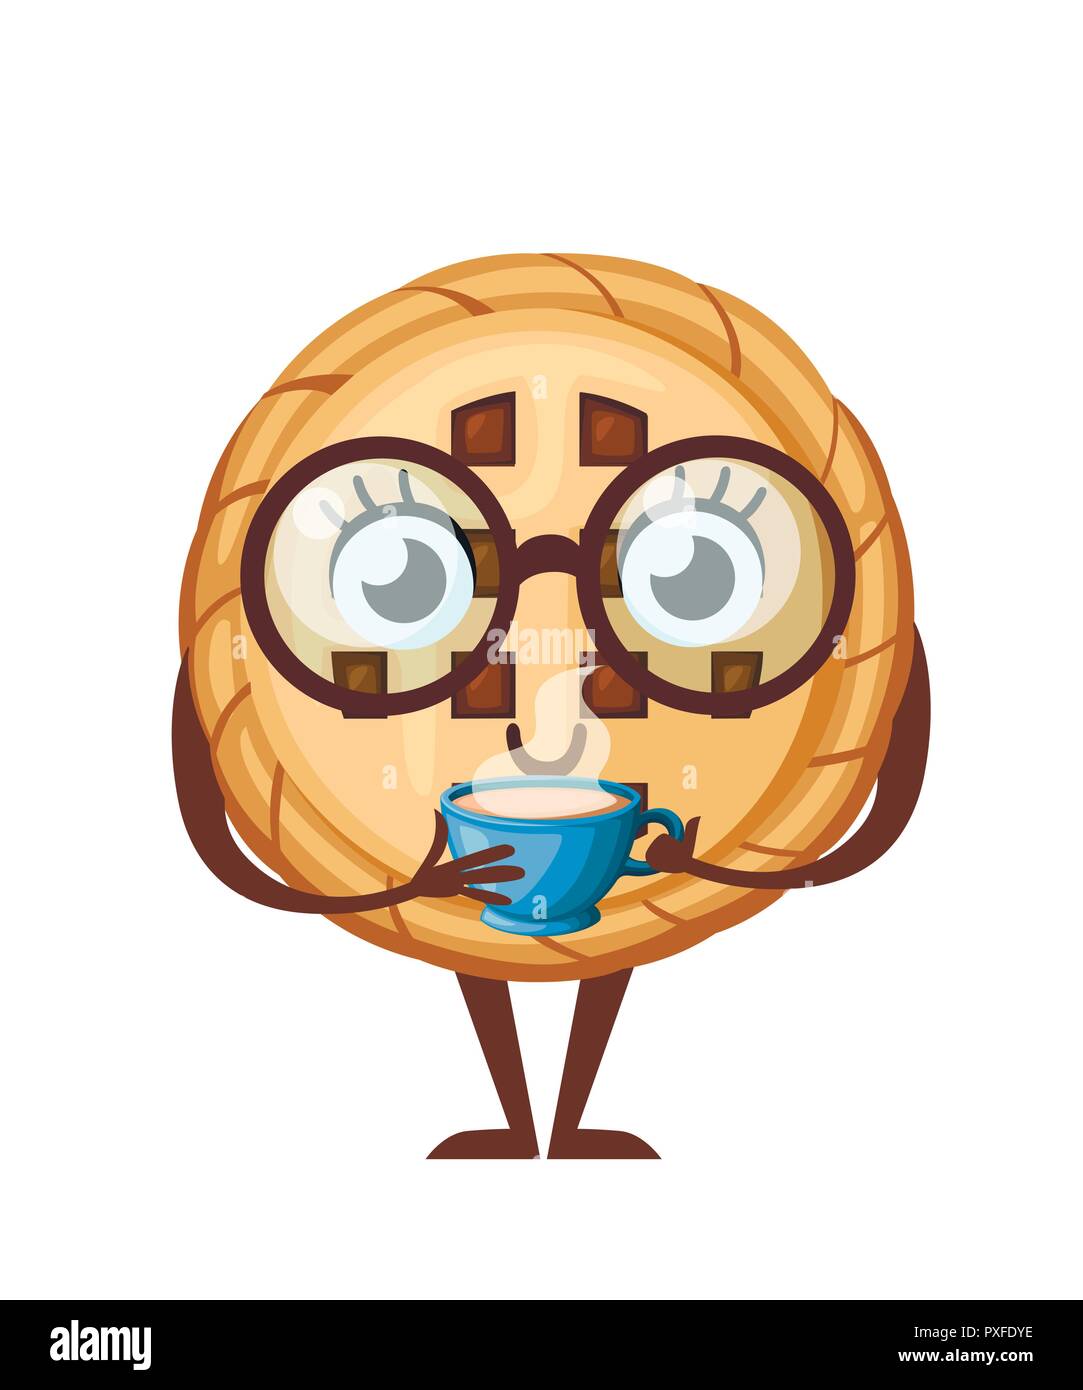 Les cookies au chocolat coupe tenir avec du café. Cartoon character design. Mascotte de l'alimentation. Télévision vector illustration isolé sur fond blanc. Illustration de Vecteur